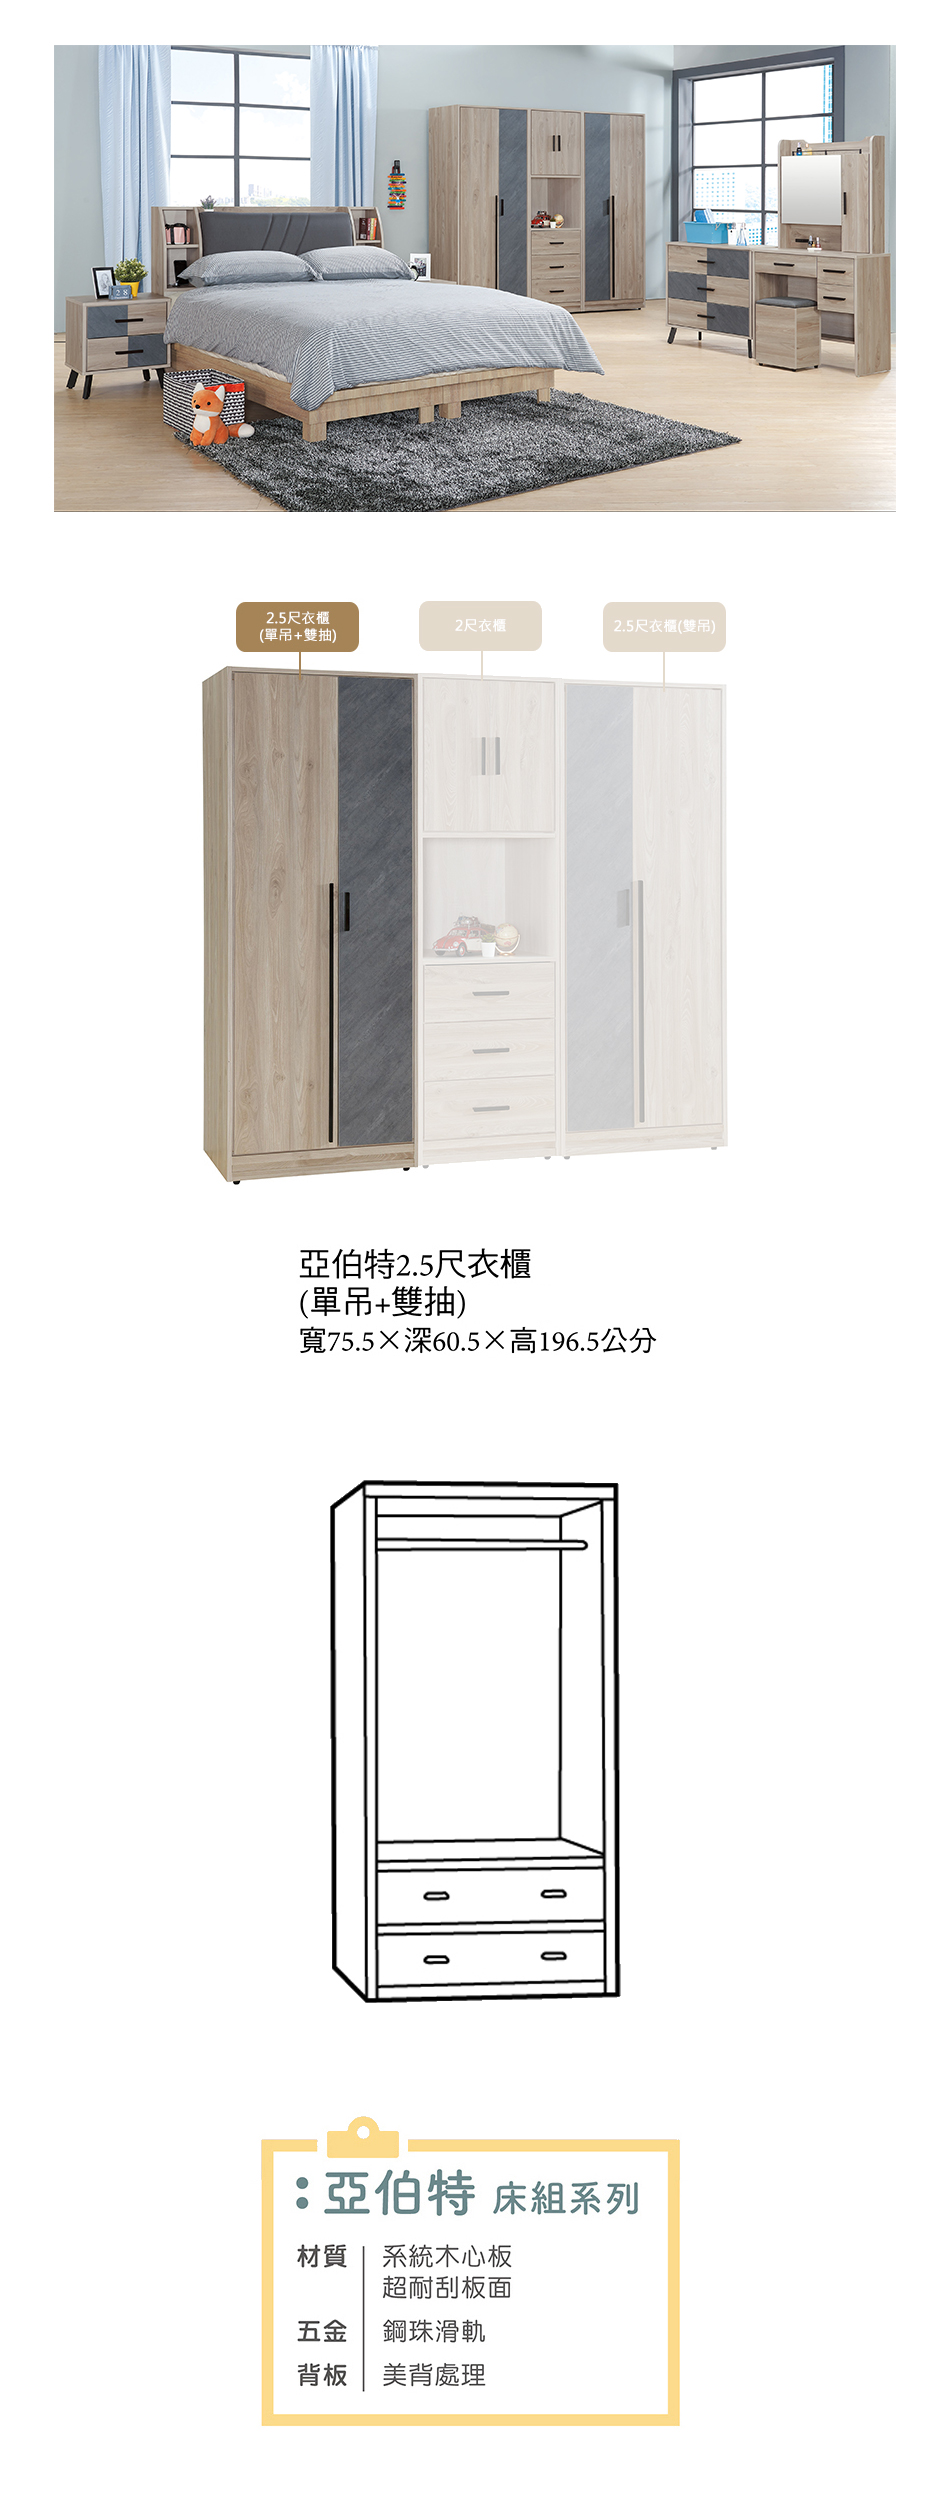 日式亞伯特2.5尺衣櫃(單吊+雙抽)